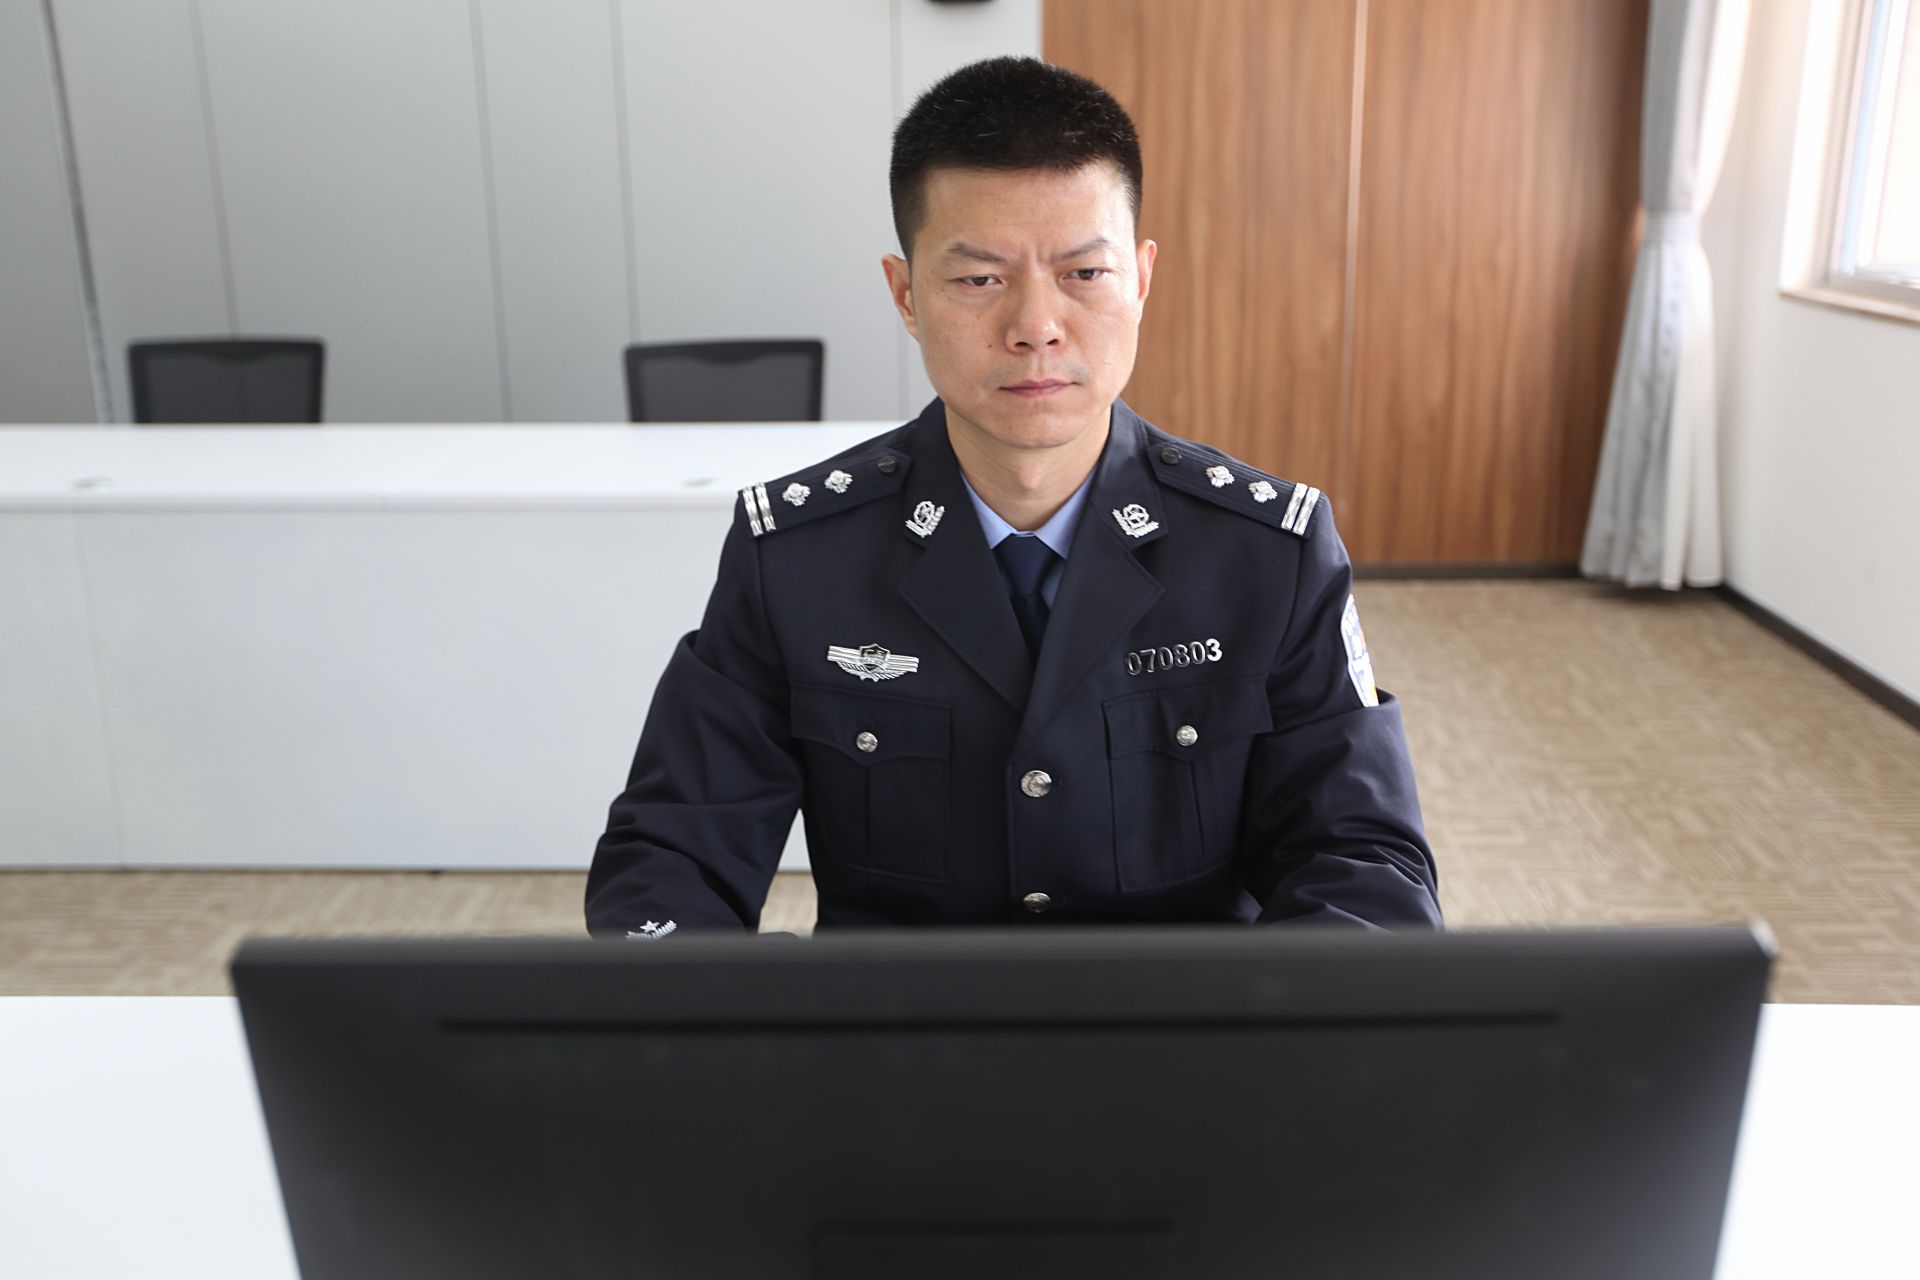 2012年从部队转业后入警,现为深圳市公安局警卫支队三大队二级警员